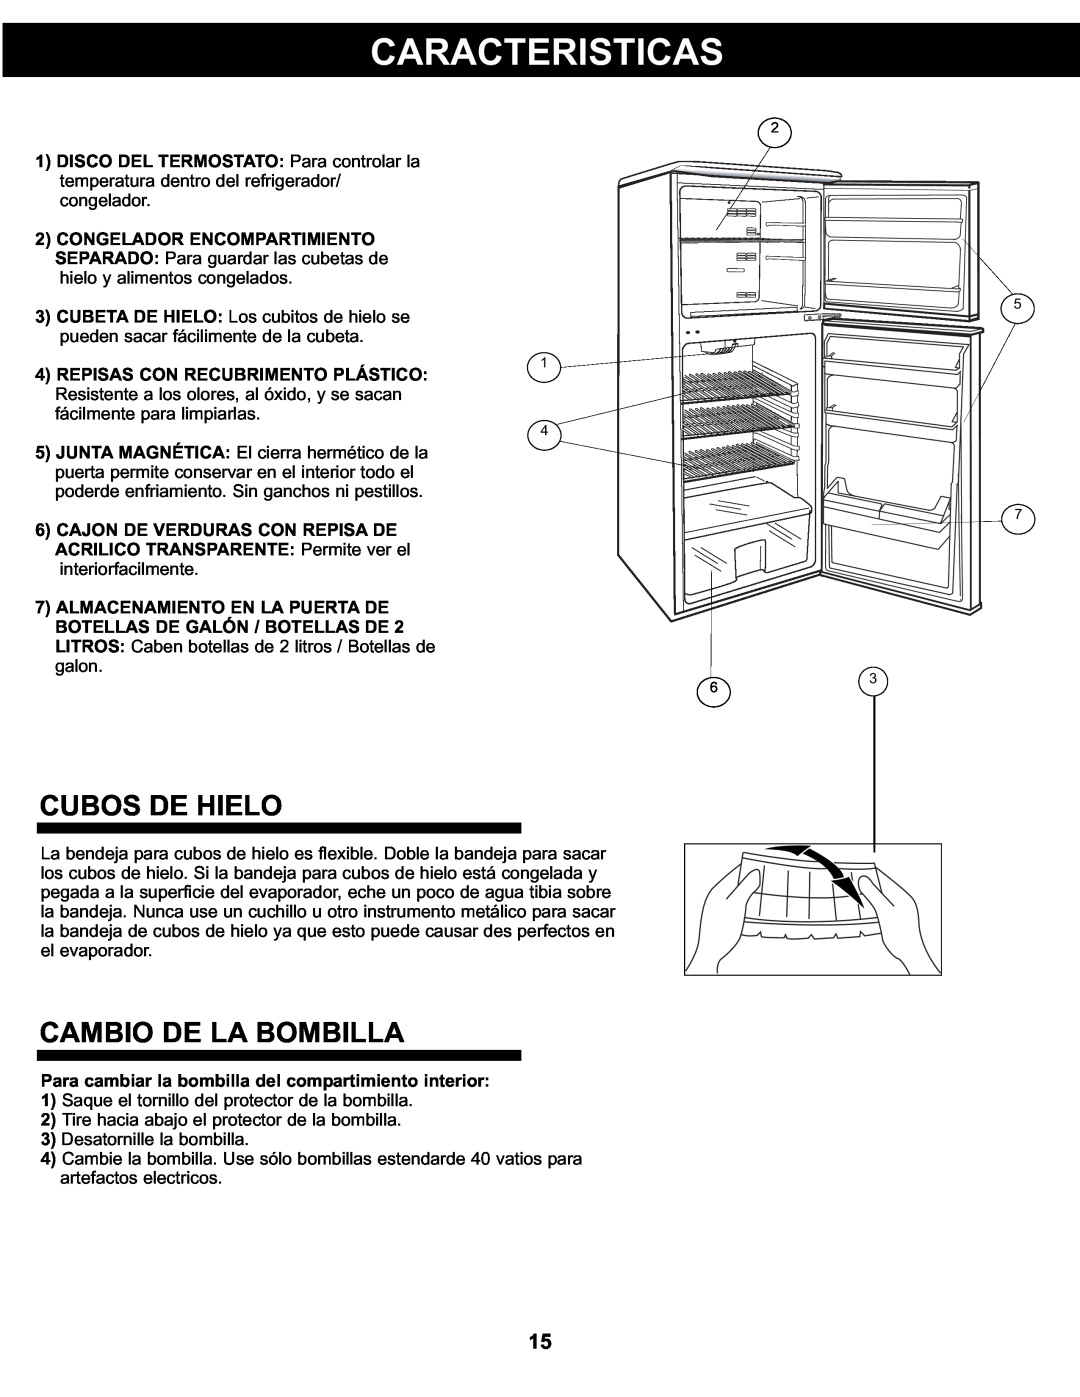 Danby DFF311WDD manual Caracteristicas, Cubos De Hielo, Cambio De La Bombilla 